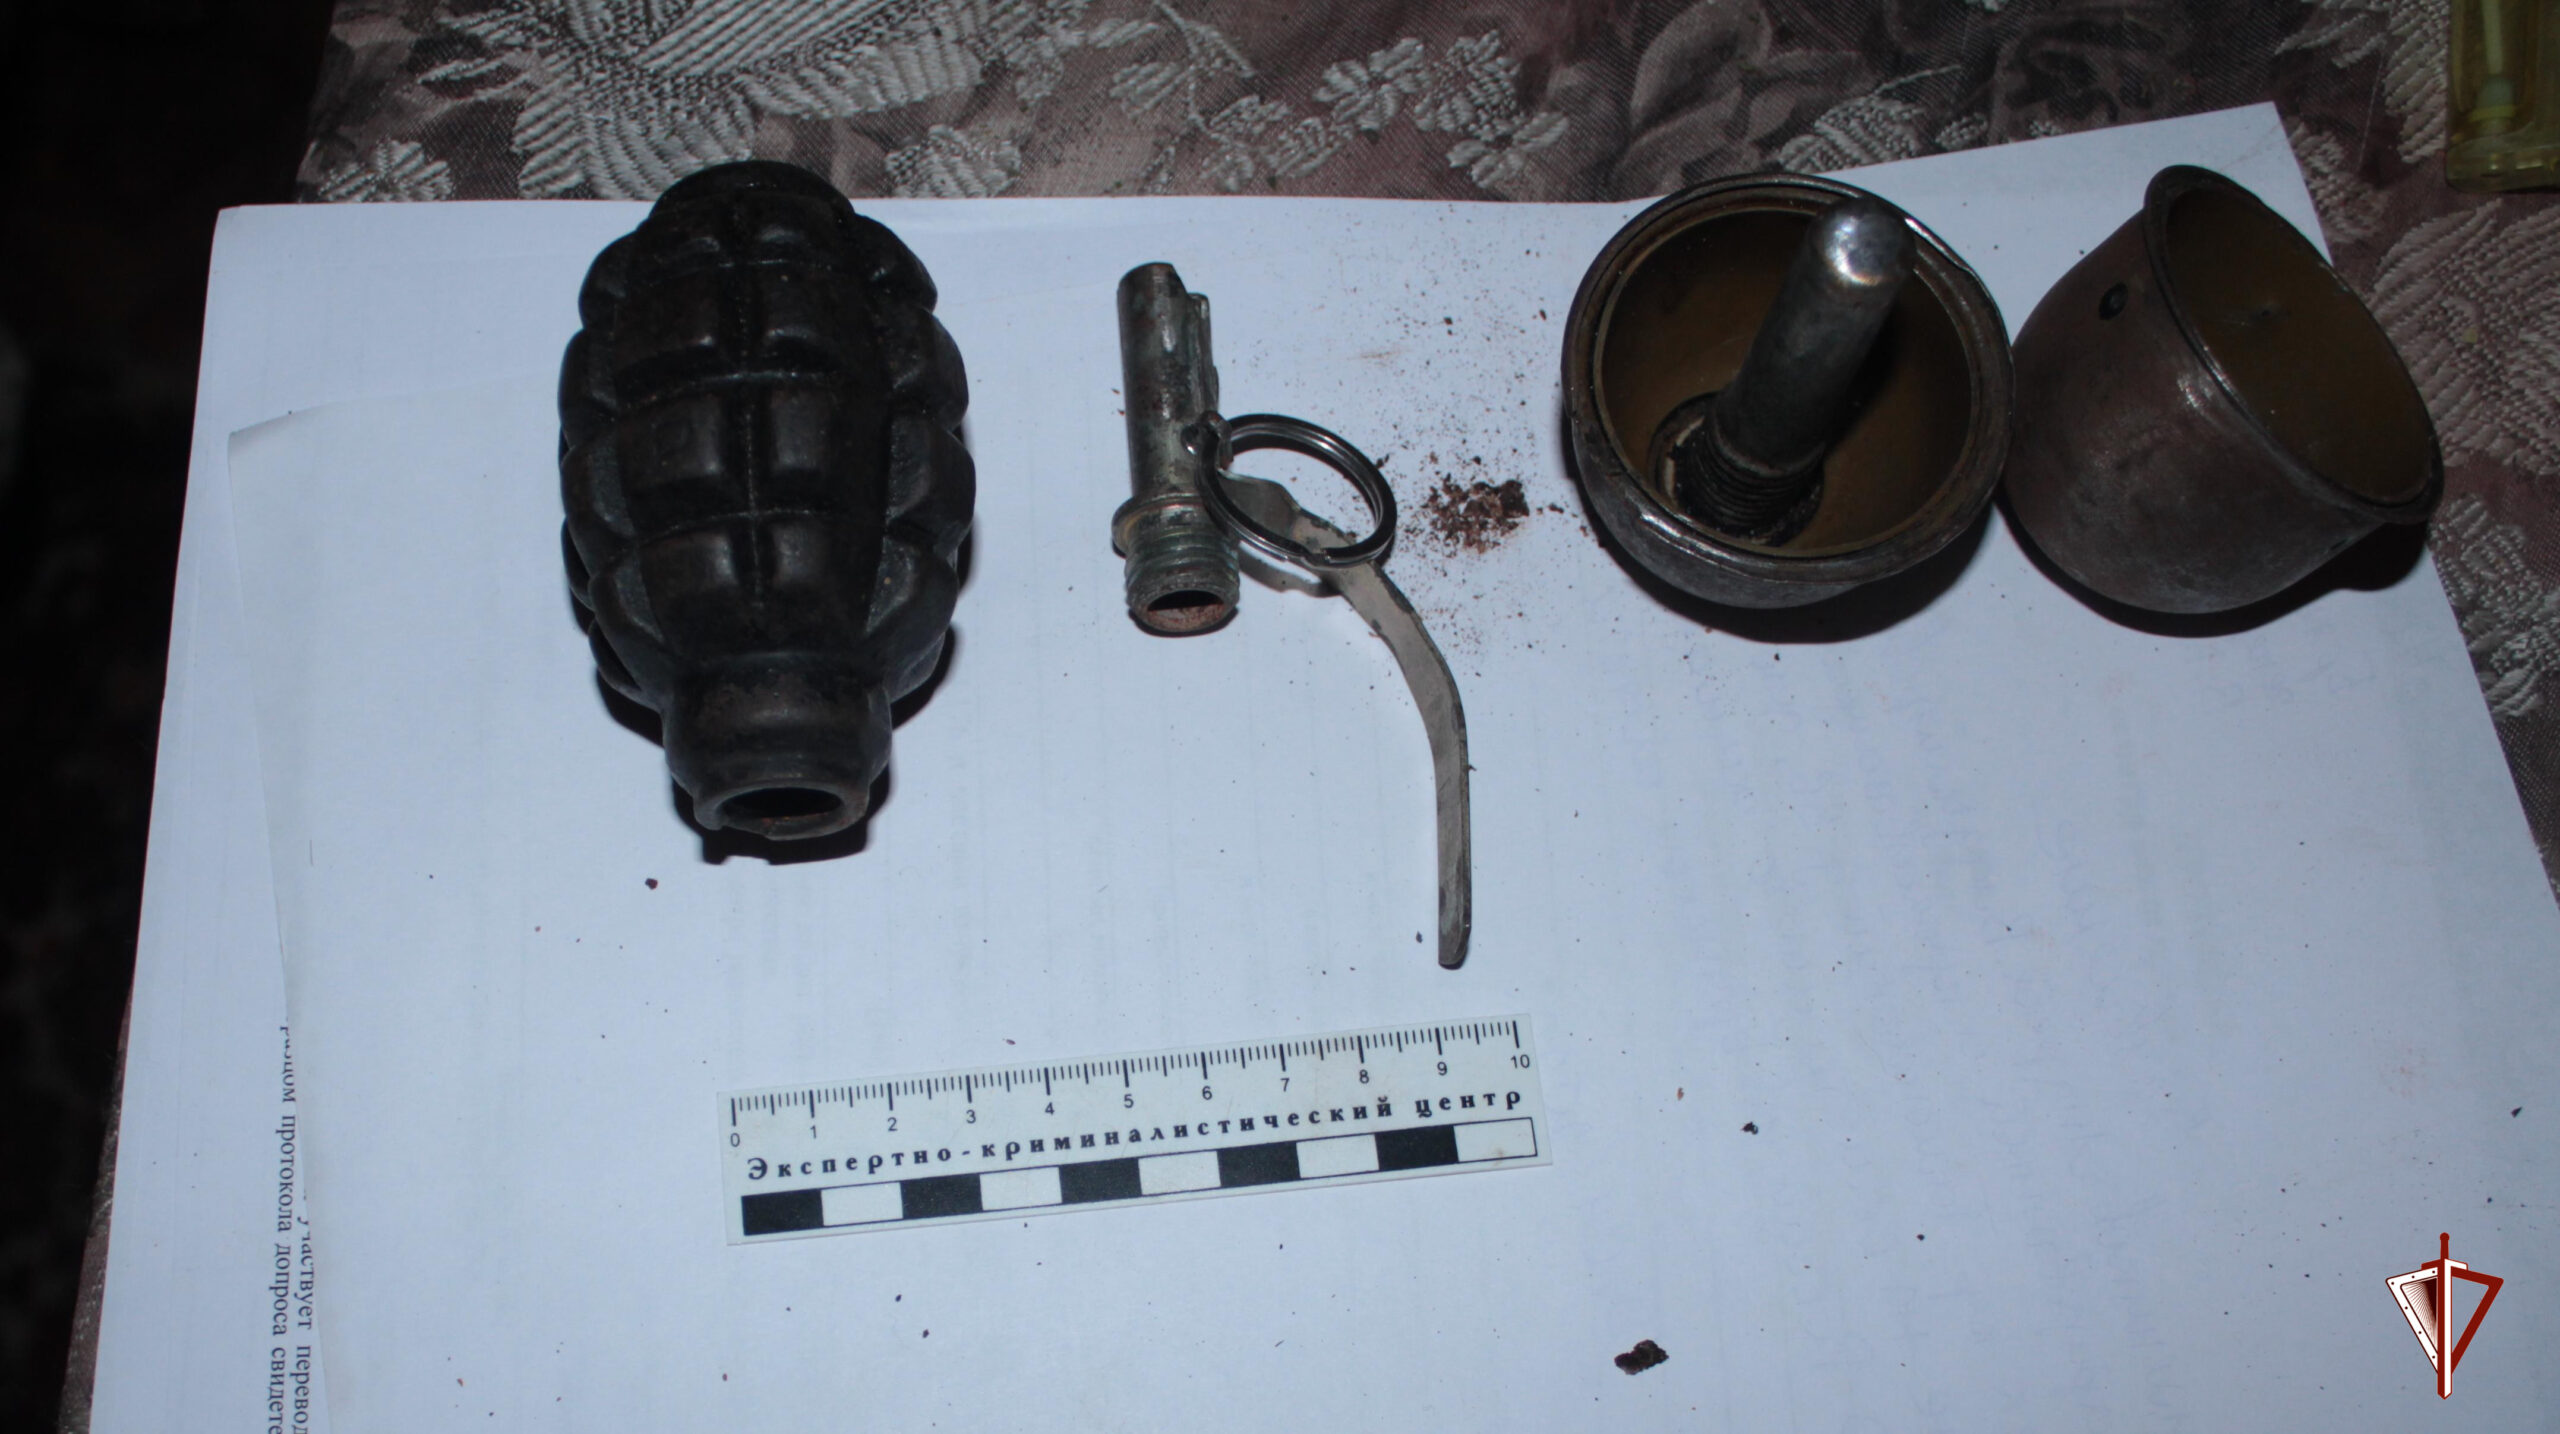 Во дворе дома в Брянске нашли две «гранаты»